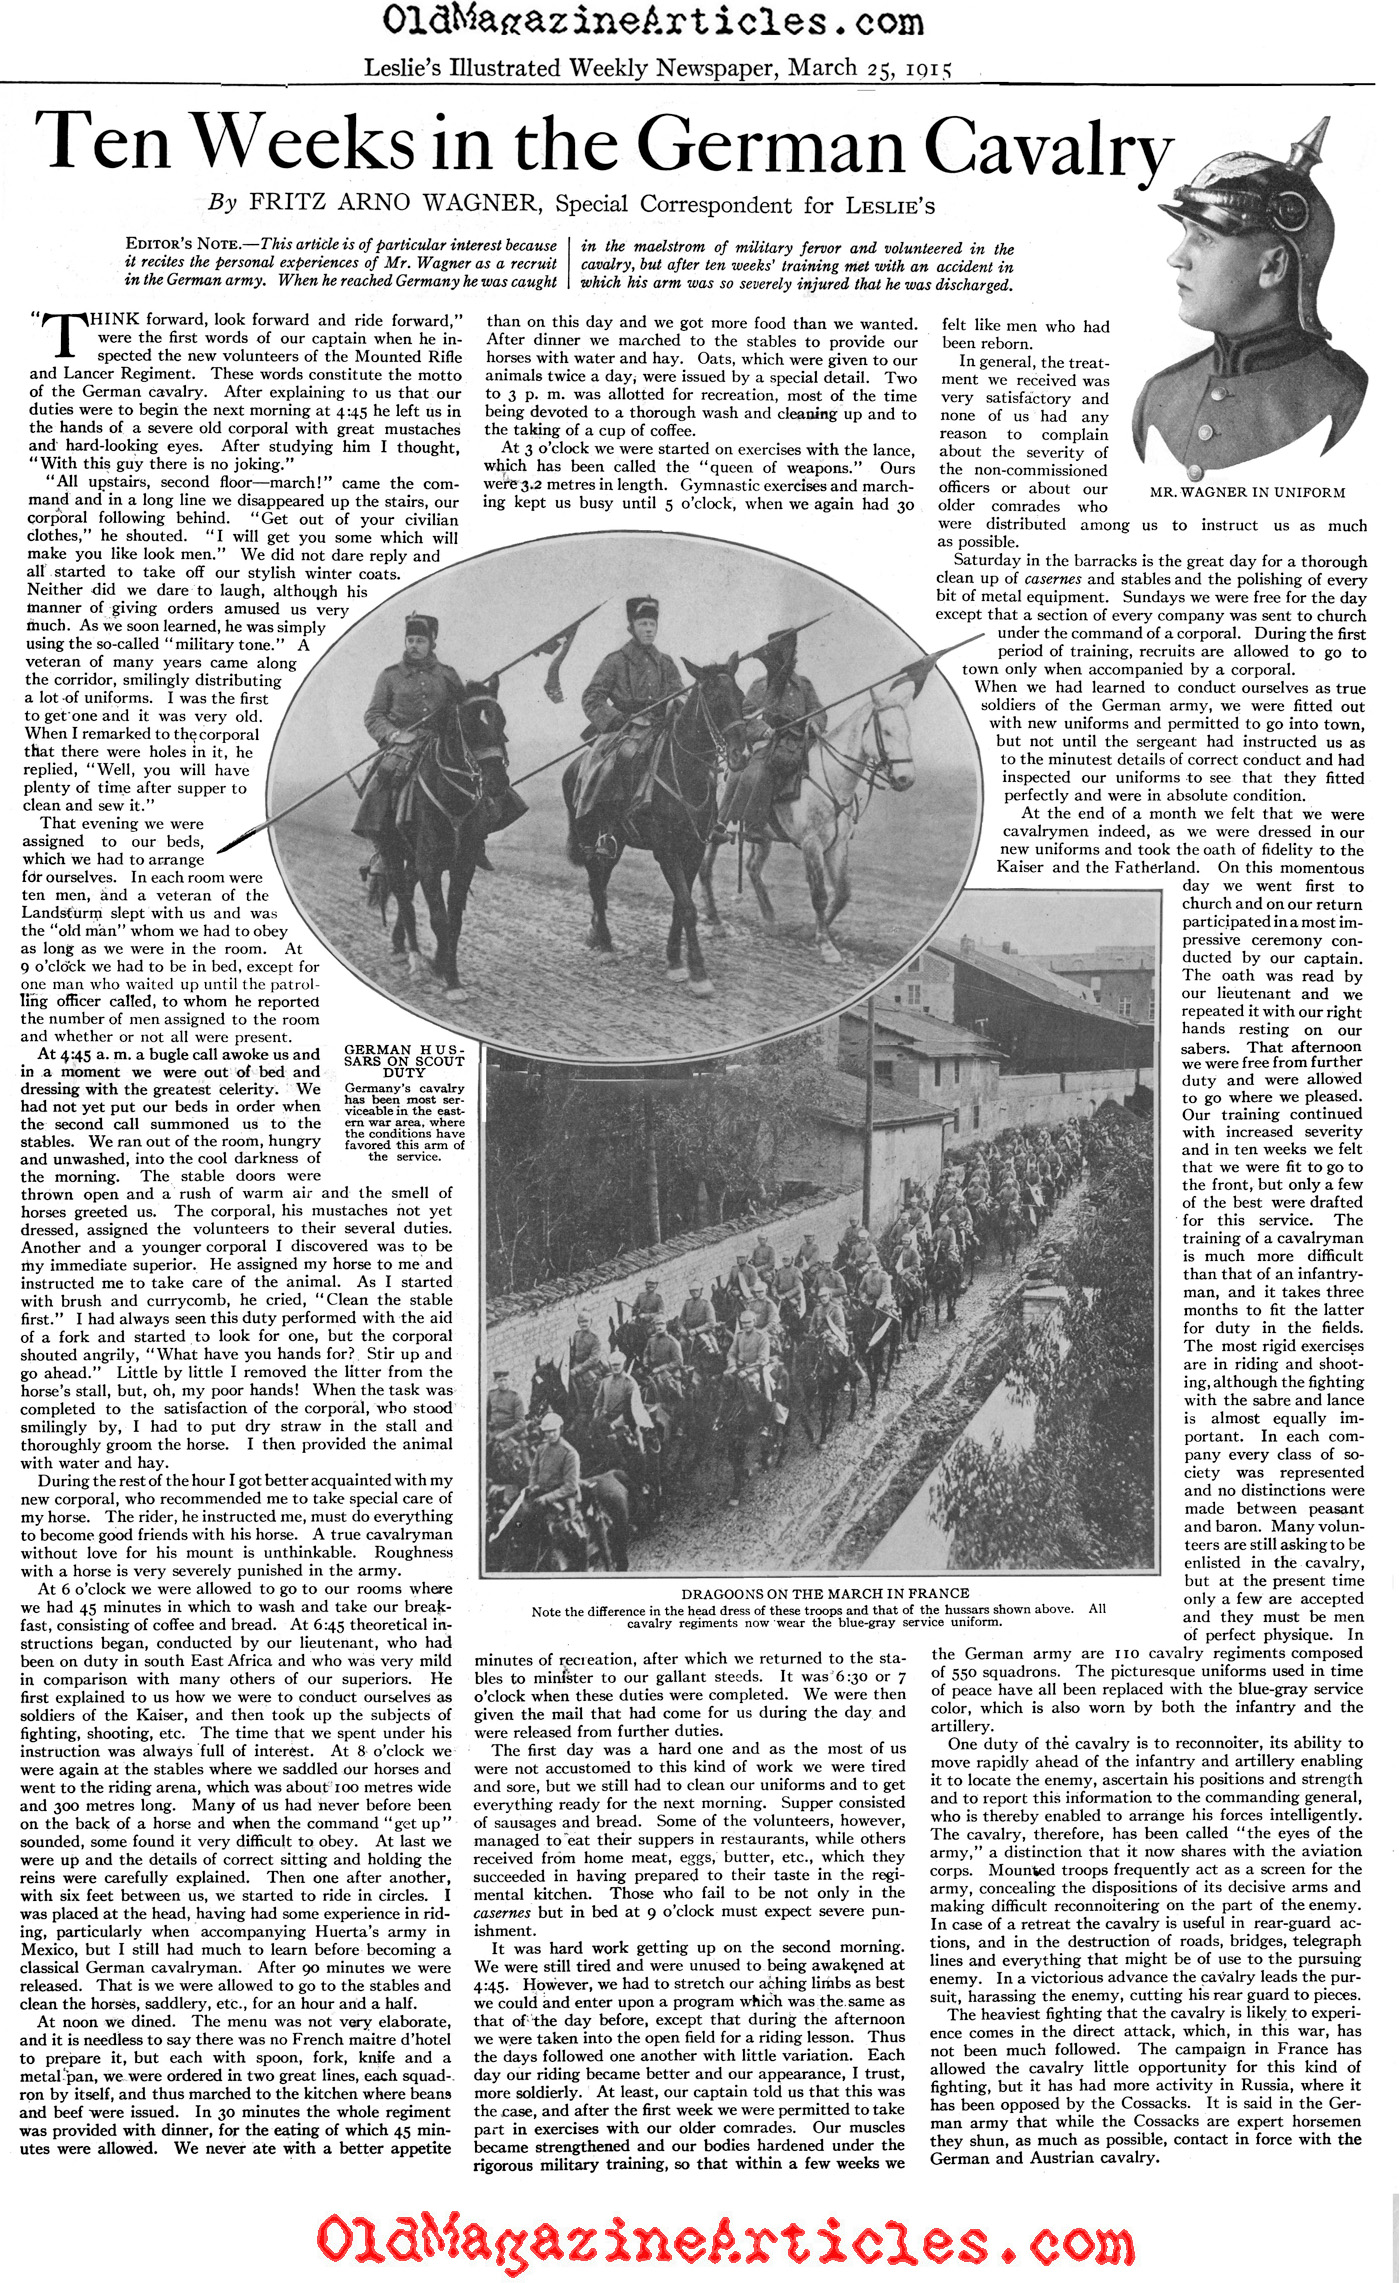 Ten Weeks in the German Cavalry (Leslie's Weekly, 1915)